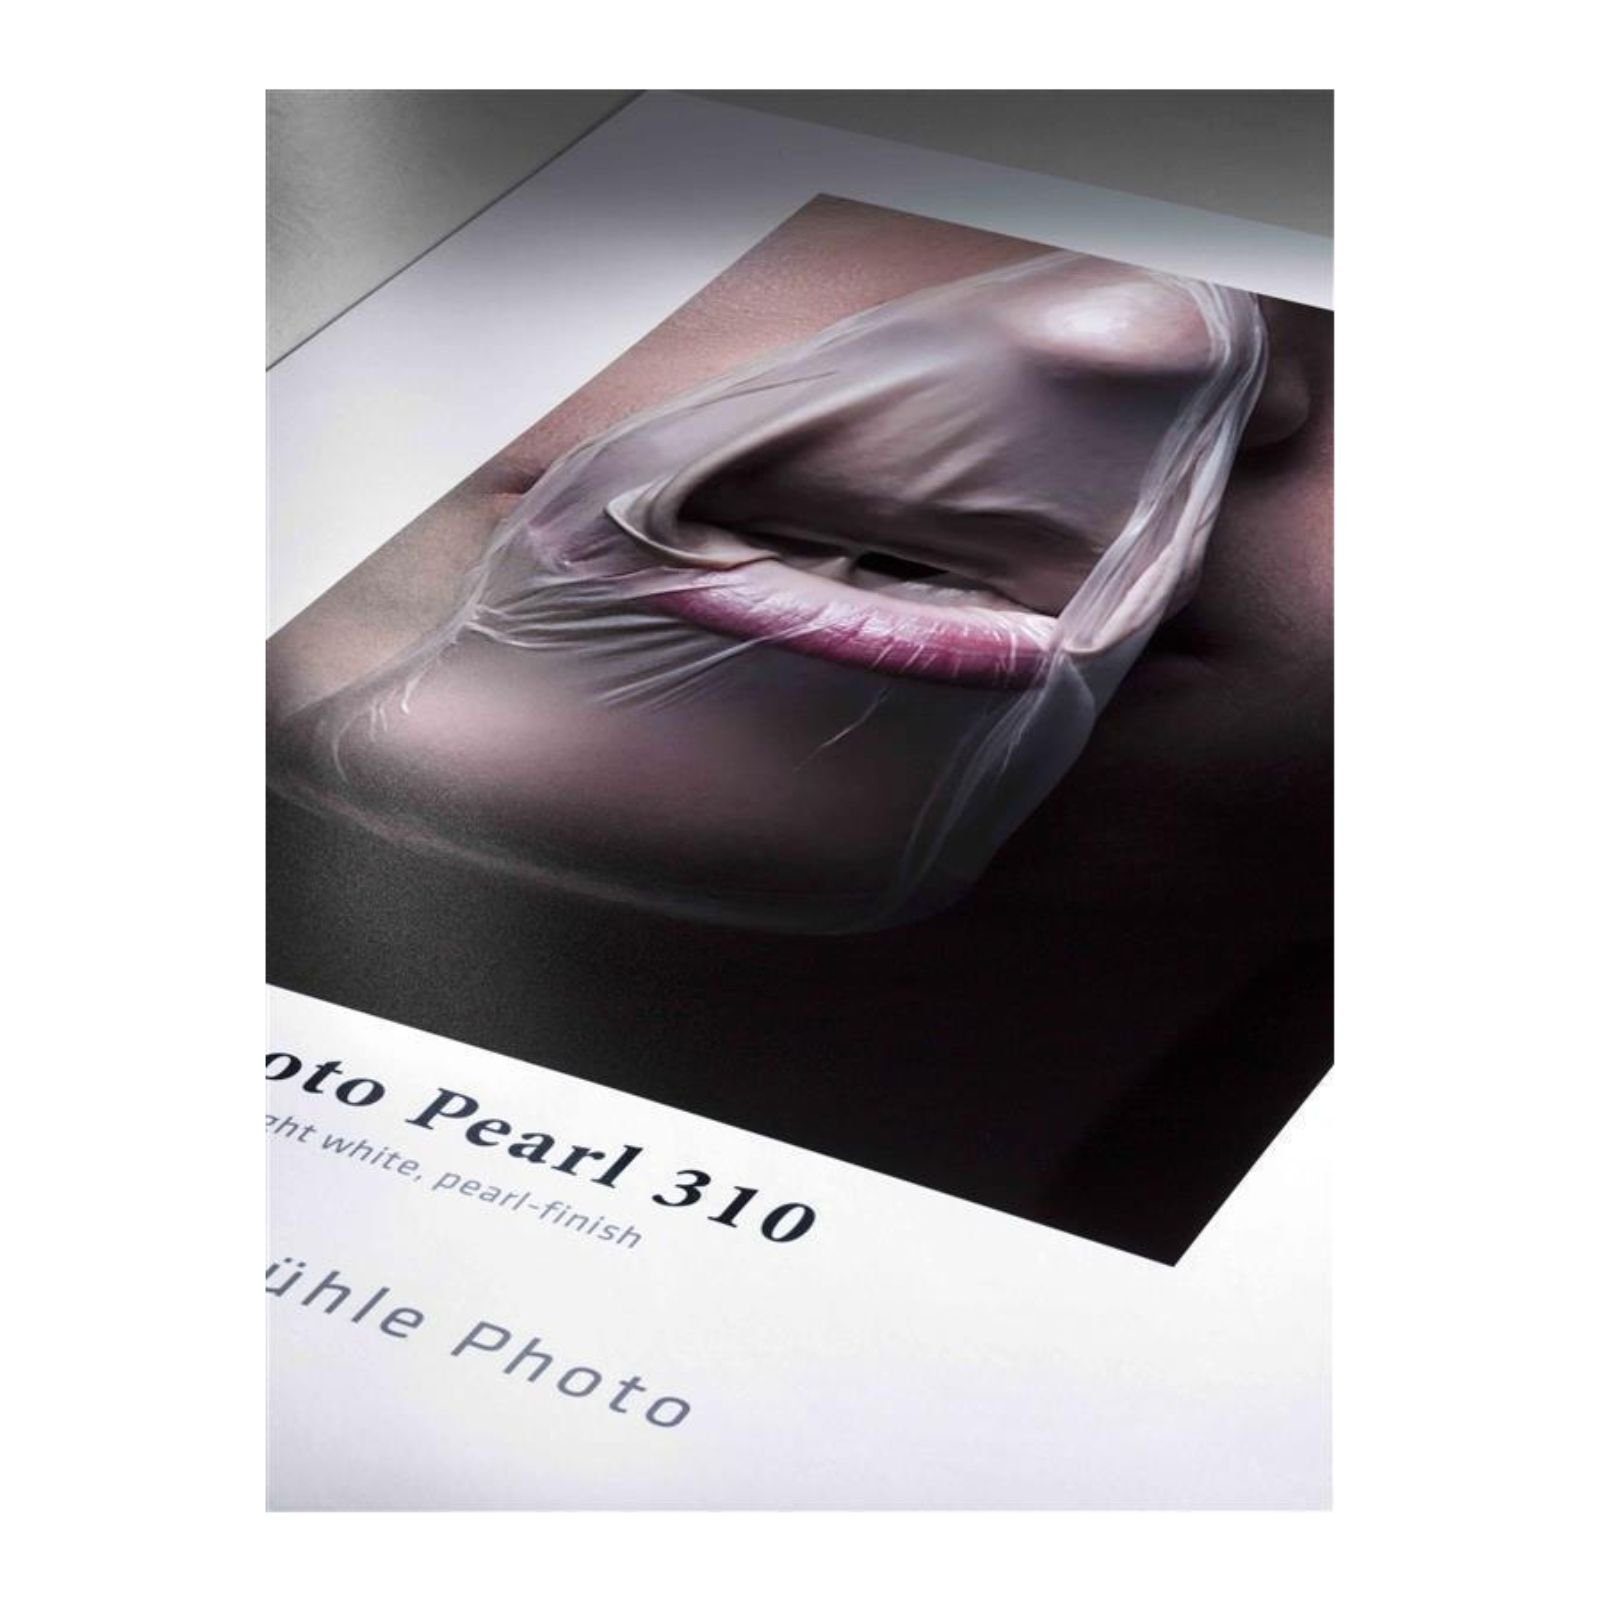 g/m² - 200 - Photo A4 310 - DIN Blatt Zeichenkohle Inkjet-Papier Hahnemühle Pearl